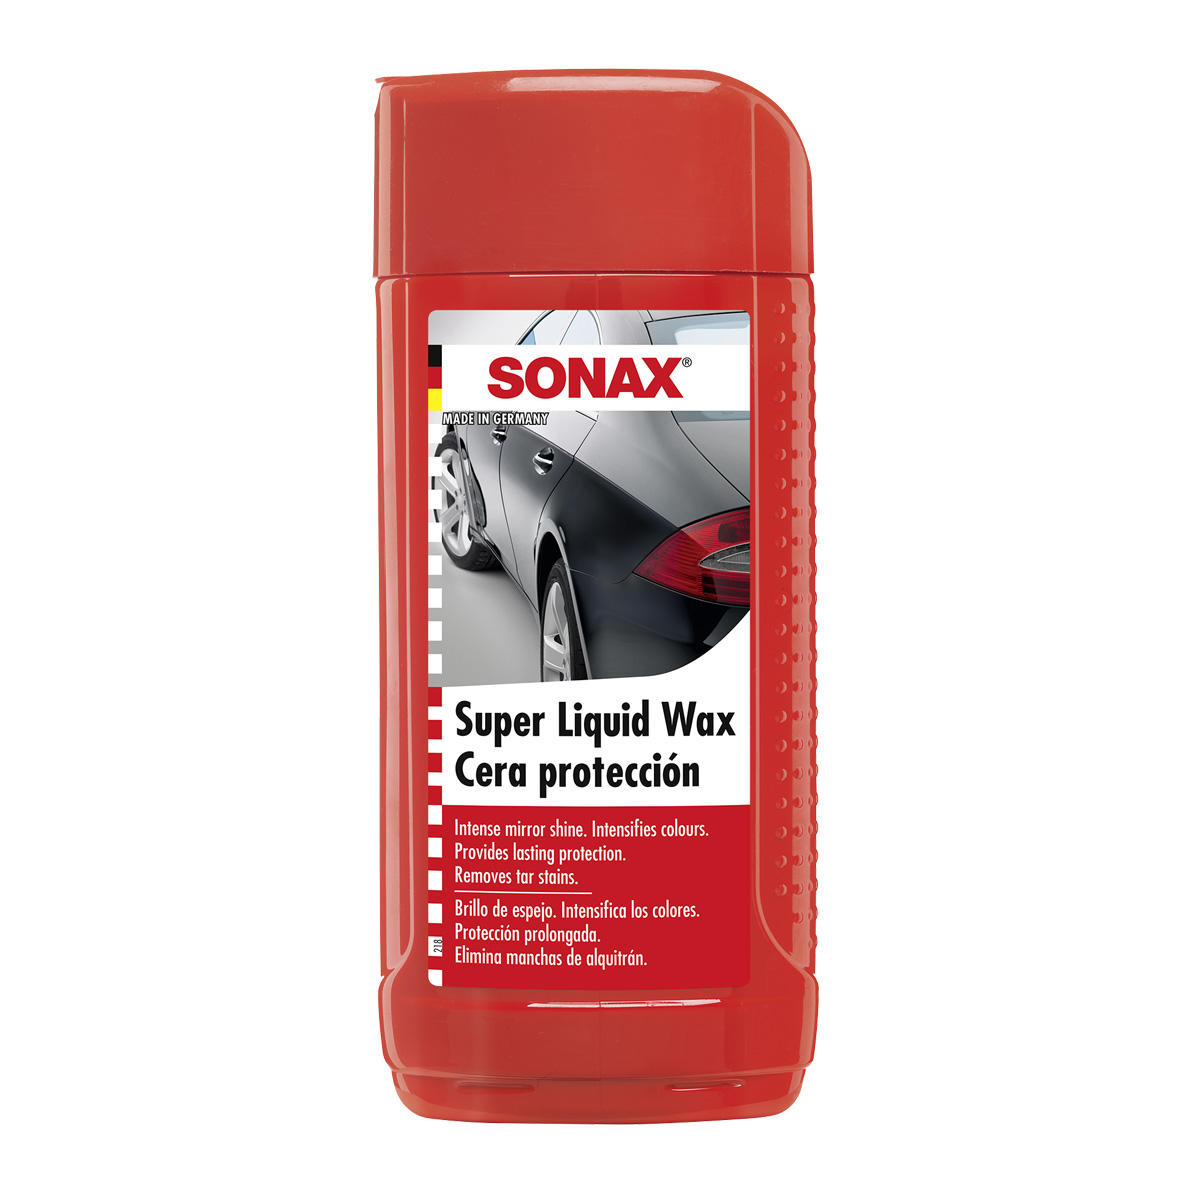 Sonax Sx90 Plus, Lubricante Multifuncional De Alta Calidad